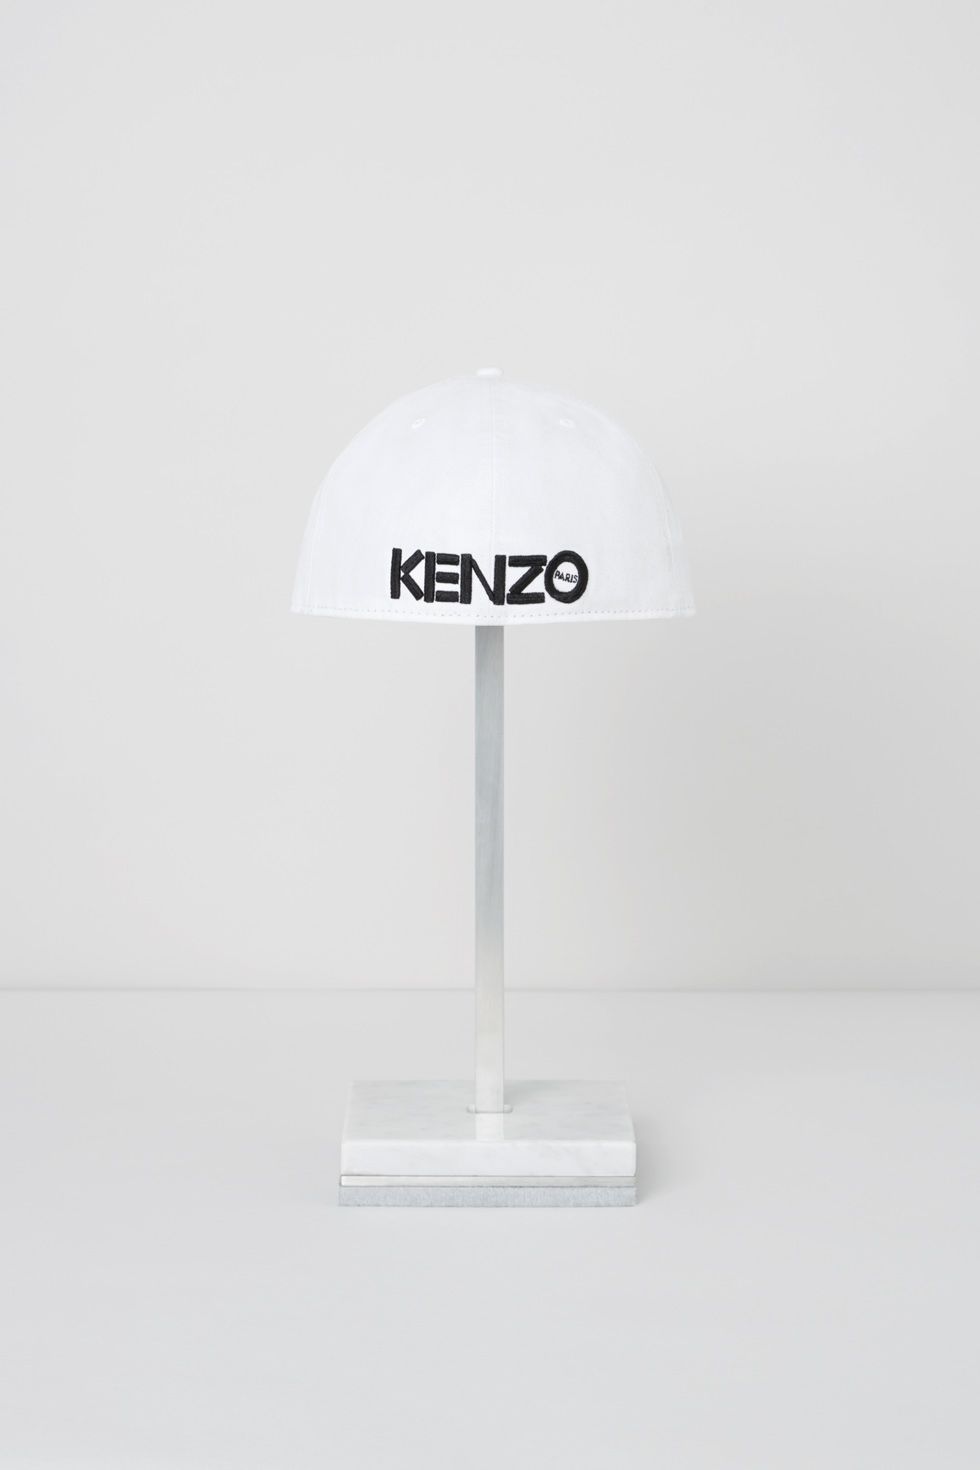 kenzo-new-era_eye-cap_03-1